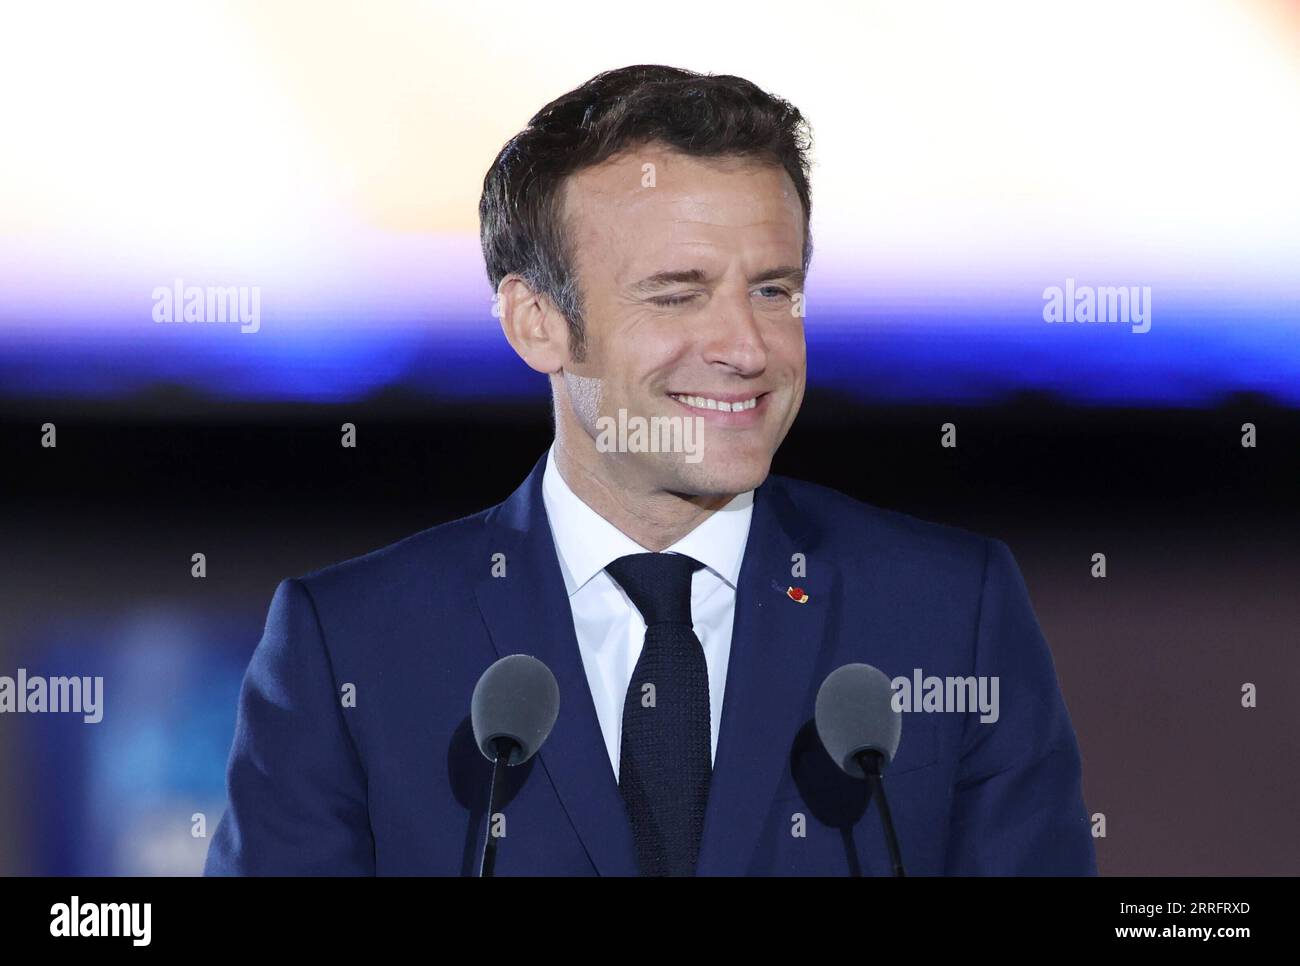 220424 -- PARIS, 24. April 2022 -- der amtierende französische Präsident Emmanuel Macron nimmt an einer Kundgebung Teil, nachdem der Präsident am 24. April 2022 in Paris, Frankreich, abgestürzt ist. Der amtierende französische Präsident Emmanuel Macron gewann 2022 mit 58 Prozent der Stimmen den französischen Präsidentschaftsabschlag, so die vorläufige Ausstiegsumfrage, die am Sonntagabend vom französischen Fernsehen BFMTV veröffentlicht wurde. Macrons Rivale, die rechtsextreme Kandidatin Marine Le Pen, gewann 42 Prozent der Stimmen. FRANKREICH-PARIS-PRÄSIDENTENABFLUSS GaoxJing PUBLICATIONxNOTxINxCHN Stockfoto